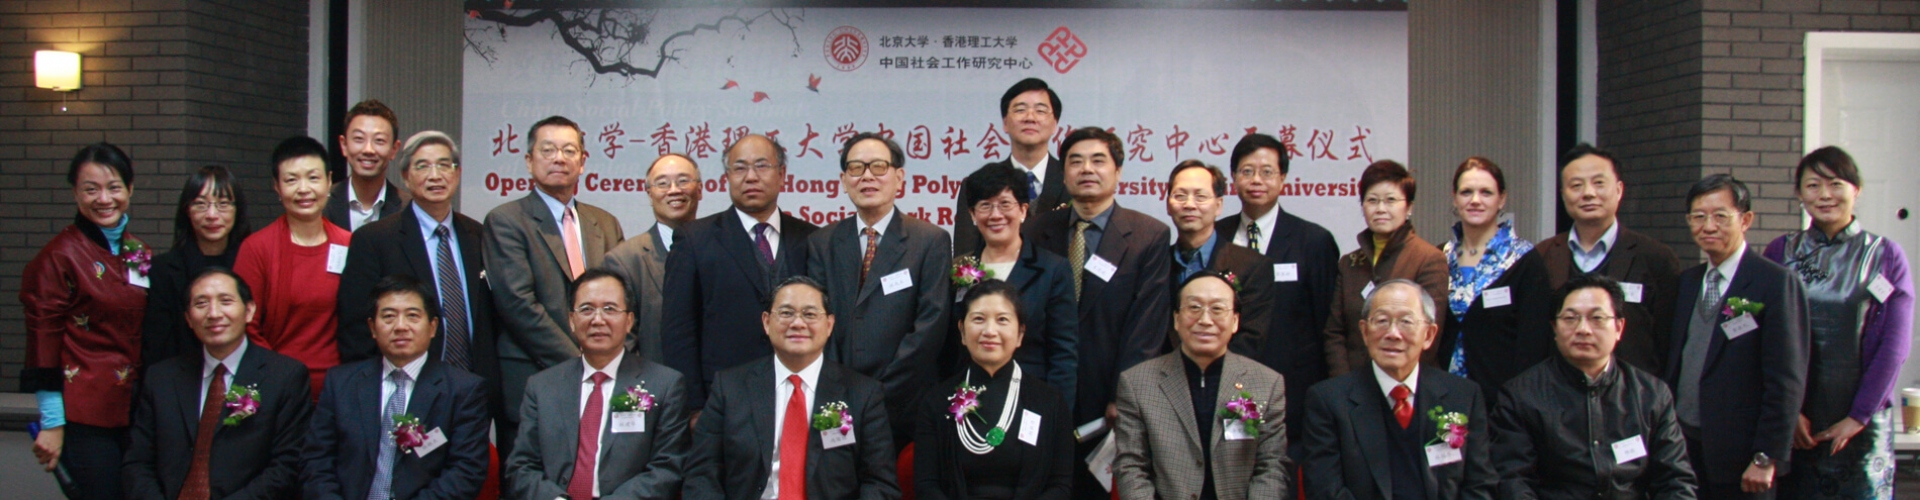 北京大学-香港理工大学中国社会工作研究中心开幕仪式